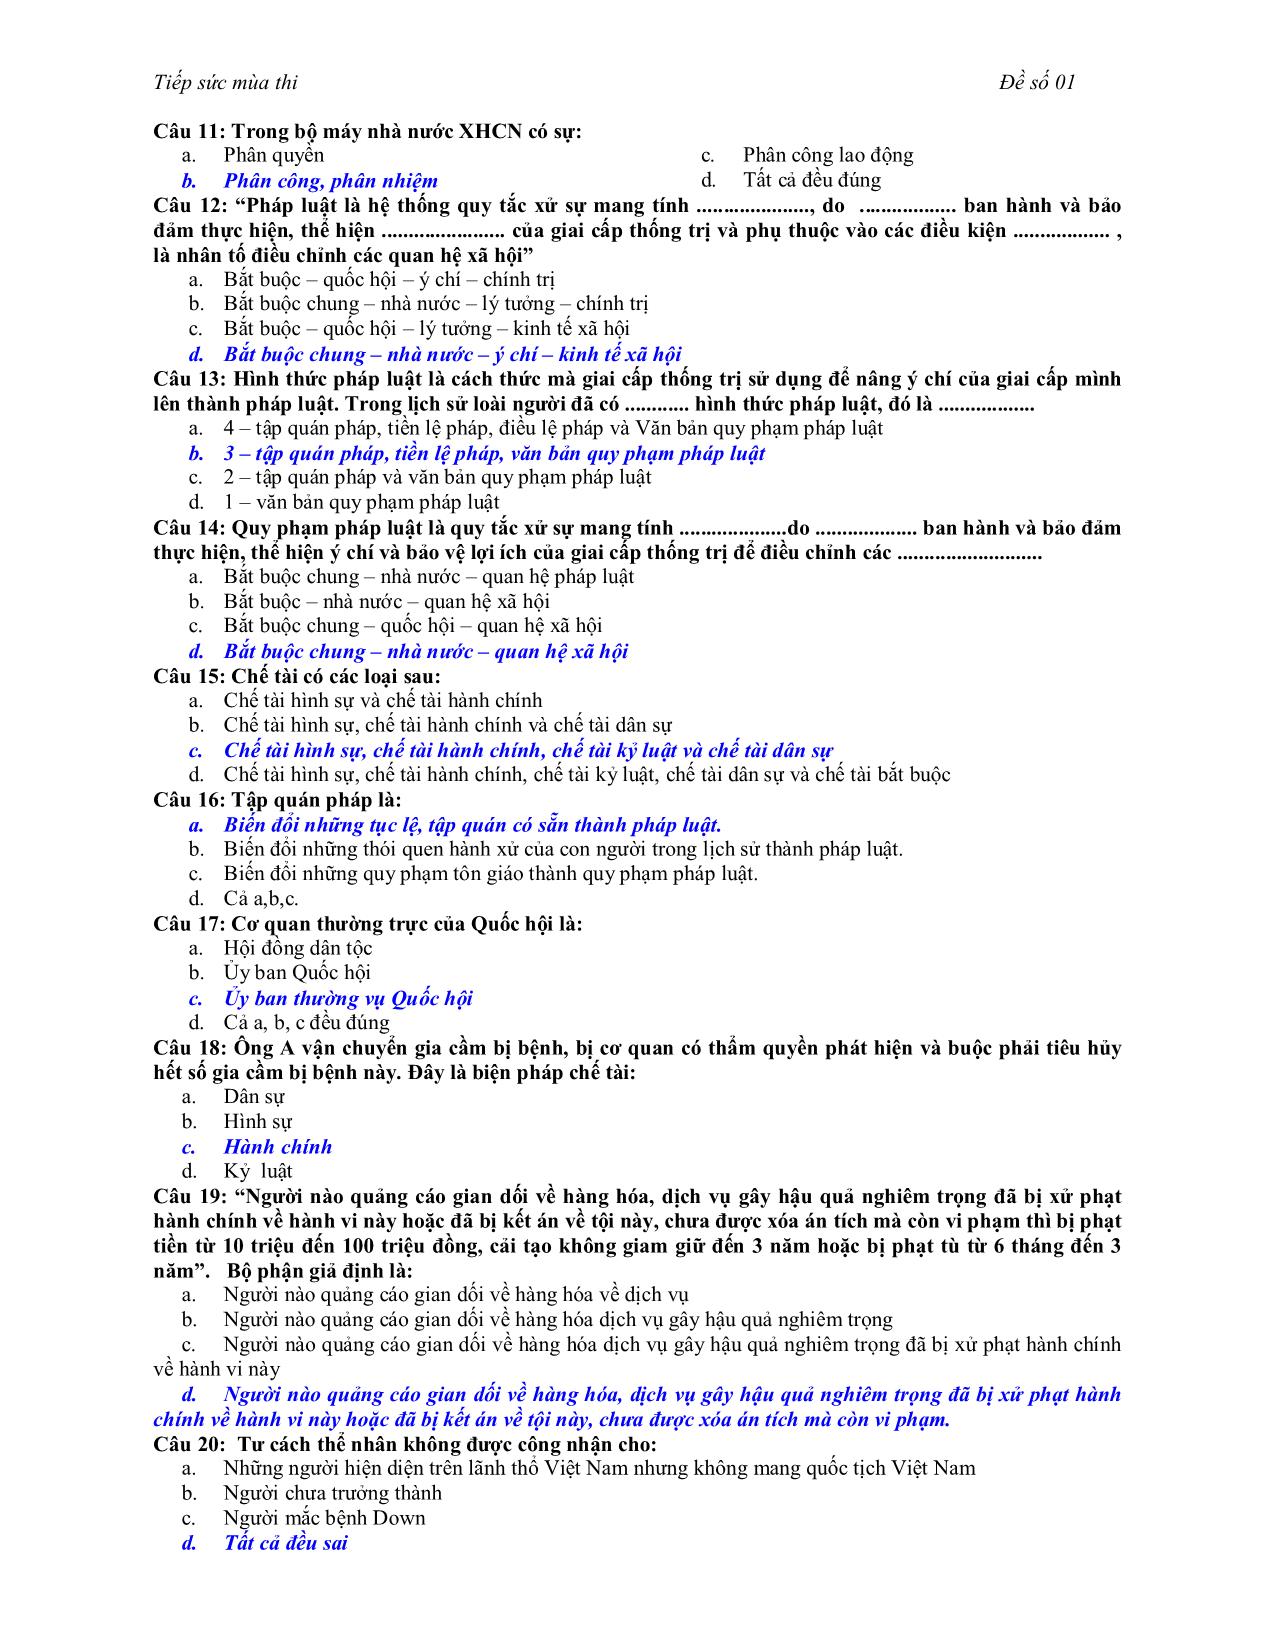 Đề kiểm tra Pháp luật đại cương - Đề số 1 trang 2